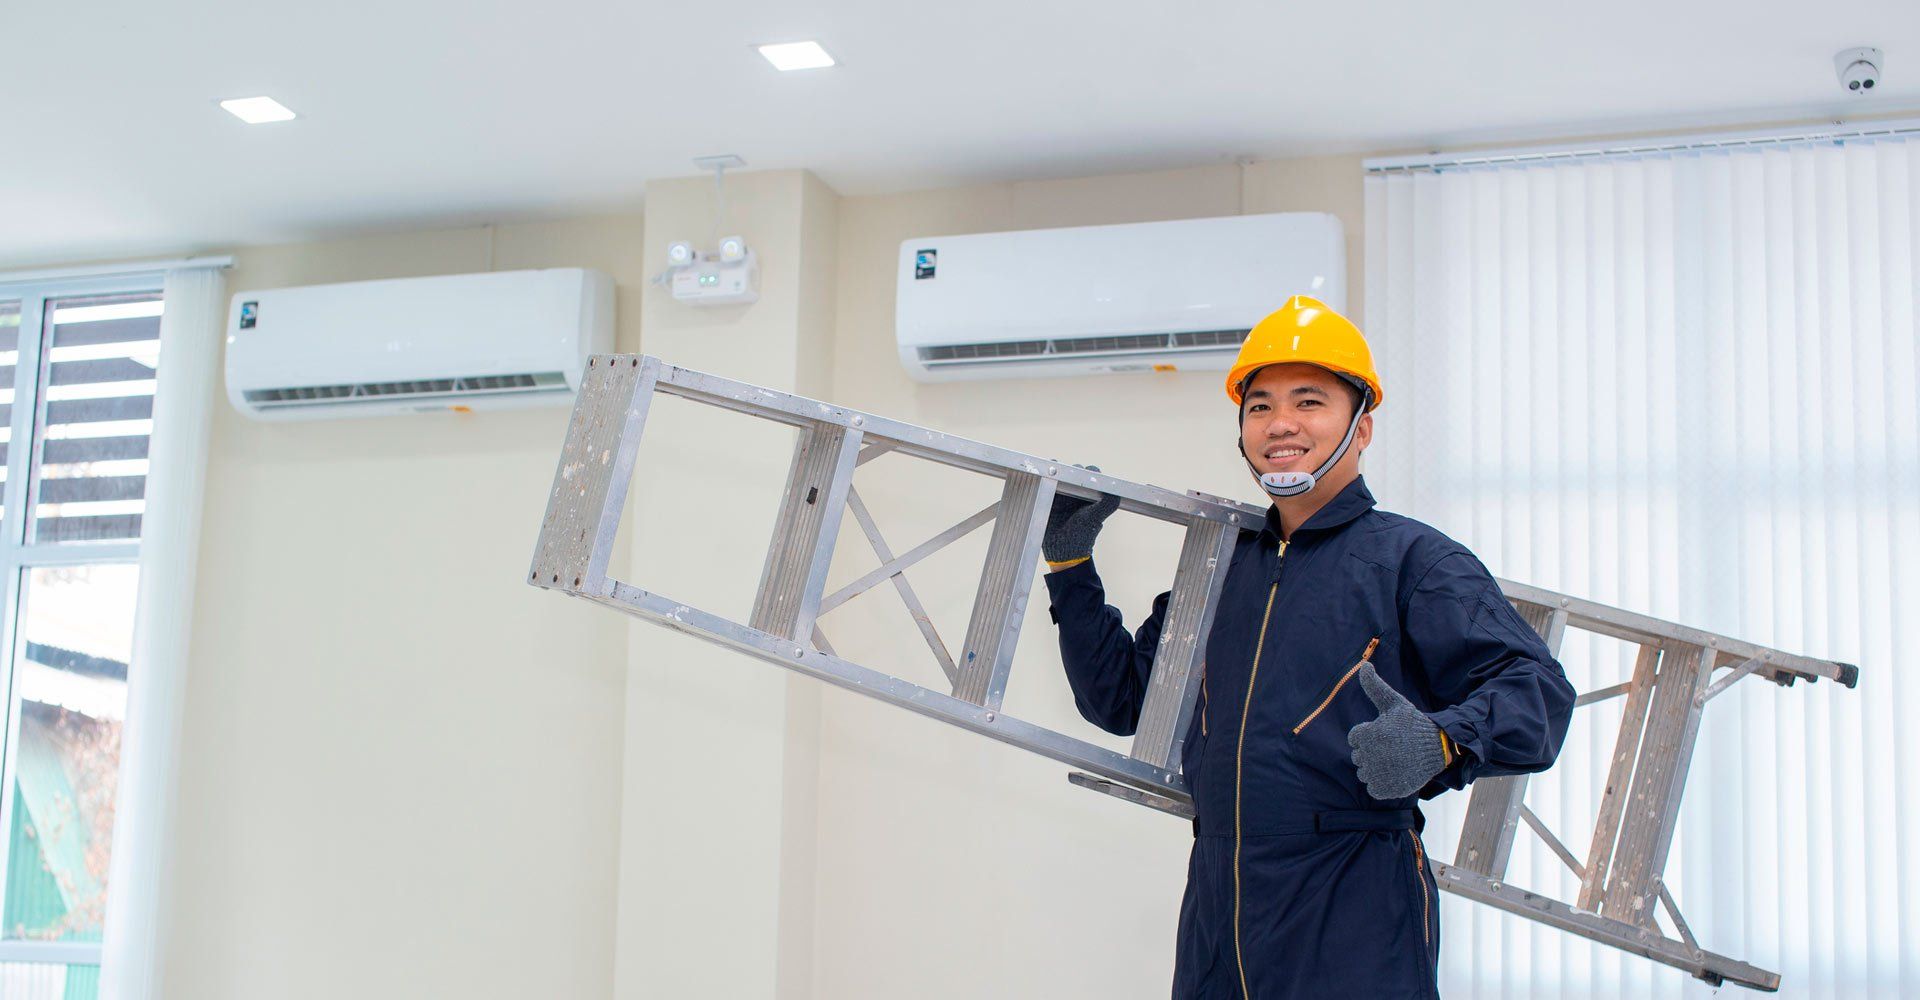 bendigo refrigeration & air conditioning services staff at work